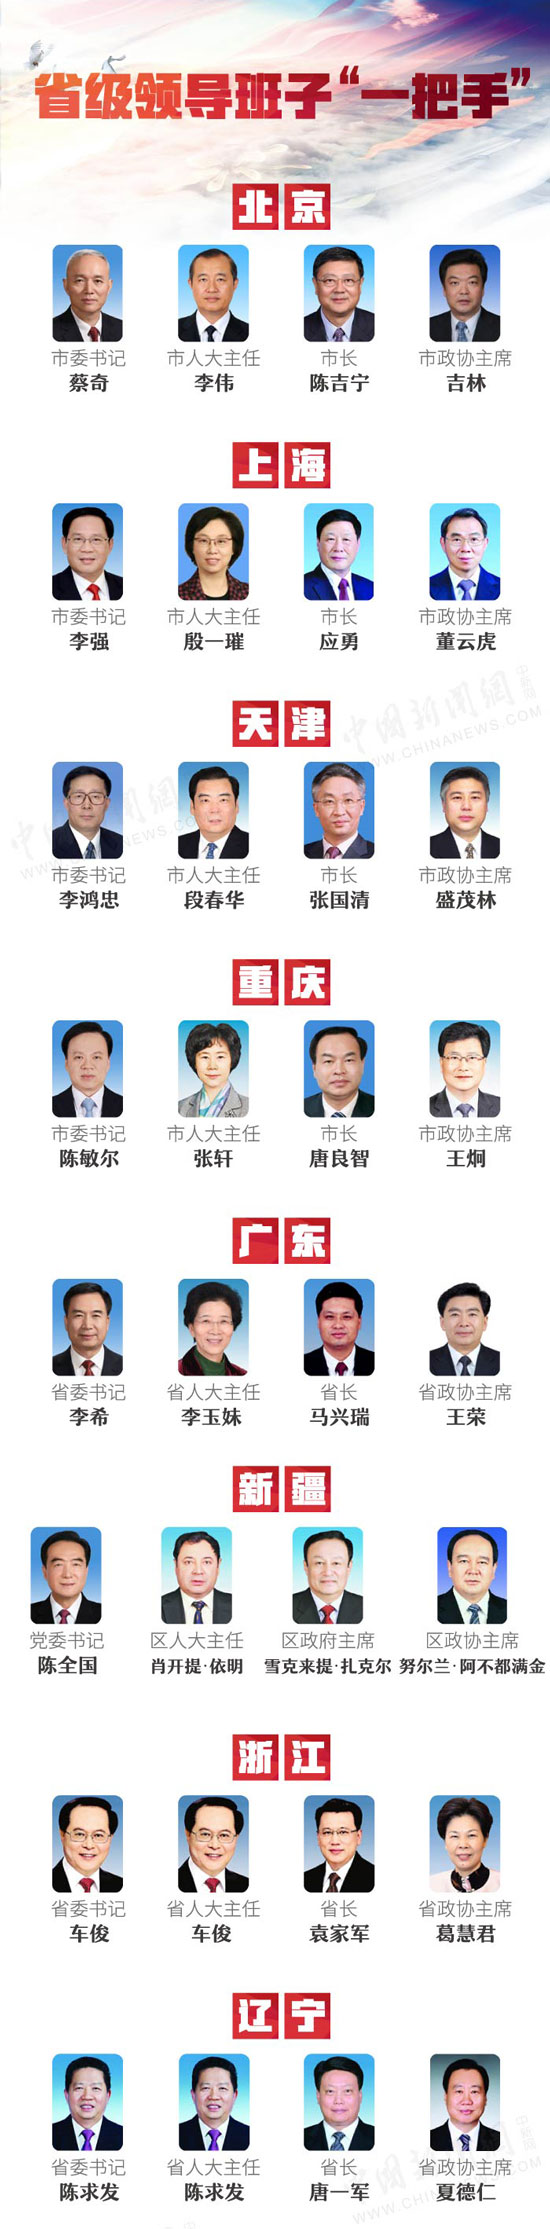 中国新闻网:省级领导班子“一把手”及各省份监察委主任名单